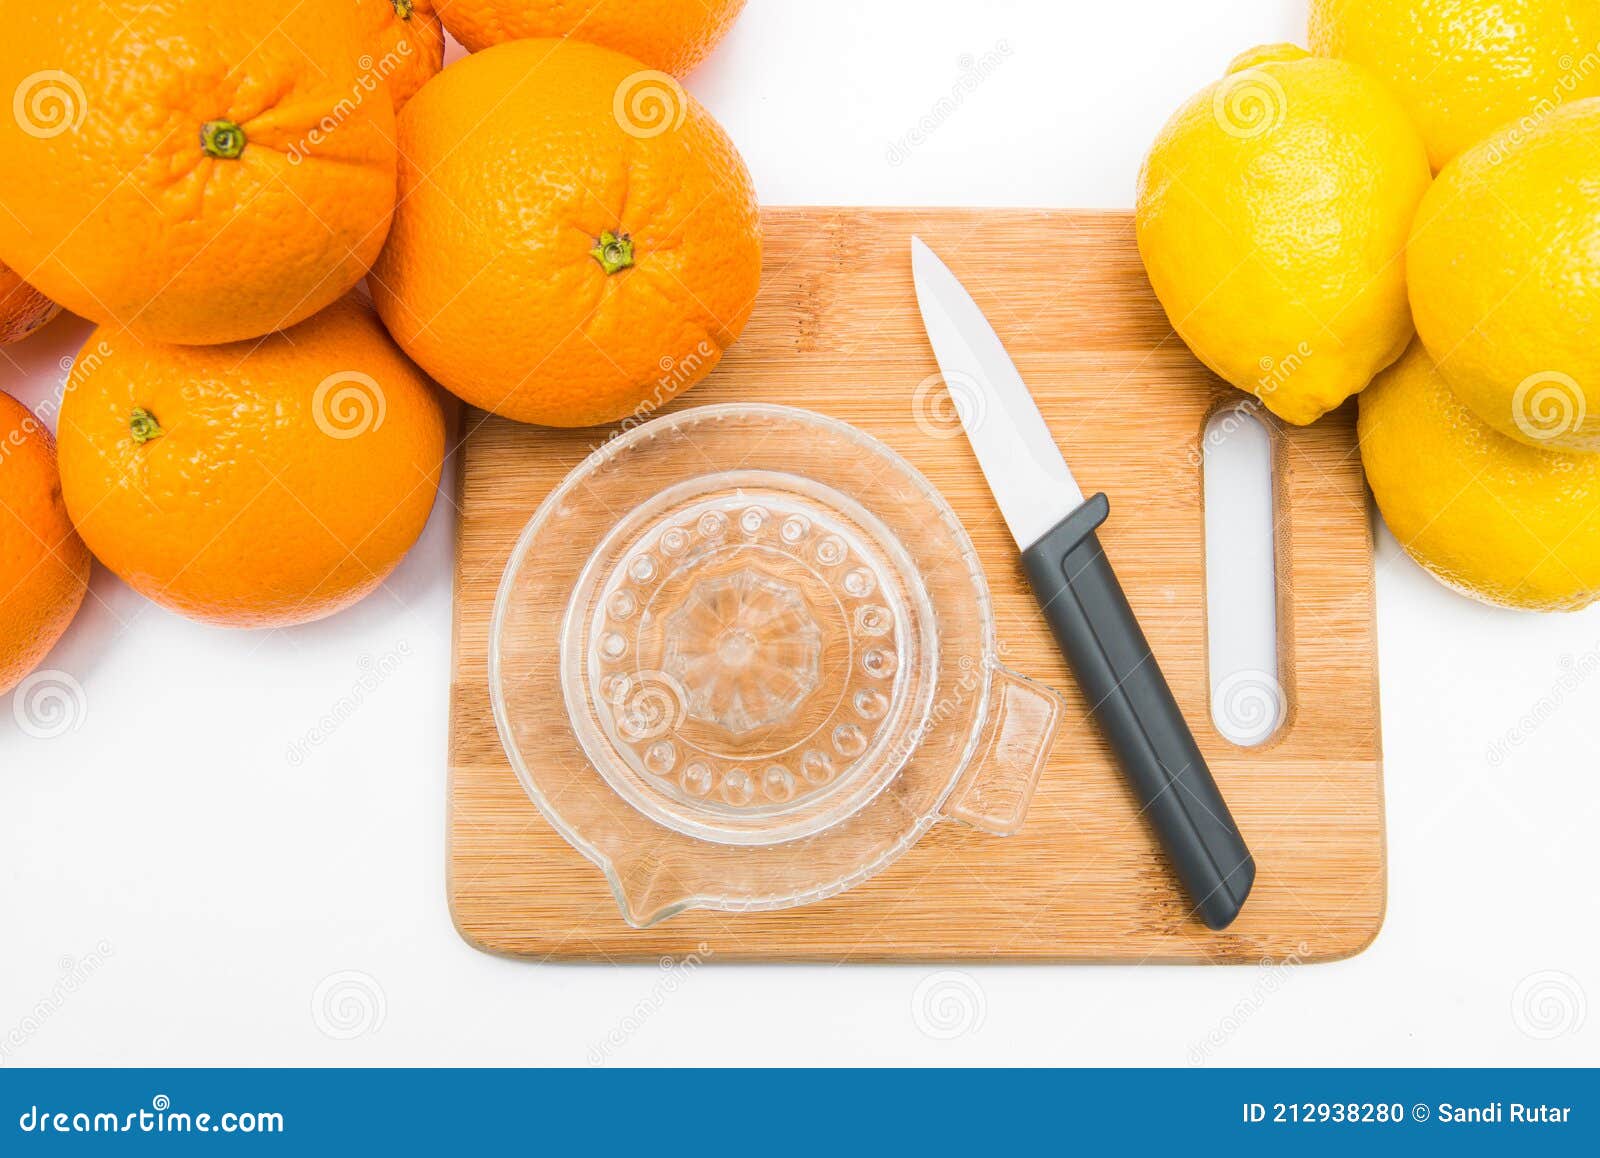 Spremuta Le Arance Fresche Con Un Juicer. Succo D'arancia in Un Bicchiere  Vicino Alla Metà Delle Arance Affettate Su Fondo Bianco. Fotografia Stock -  Immagine di frutta, raccolta: 212938280